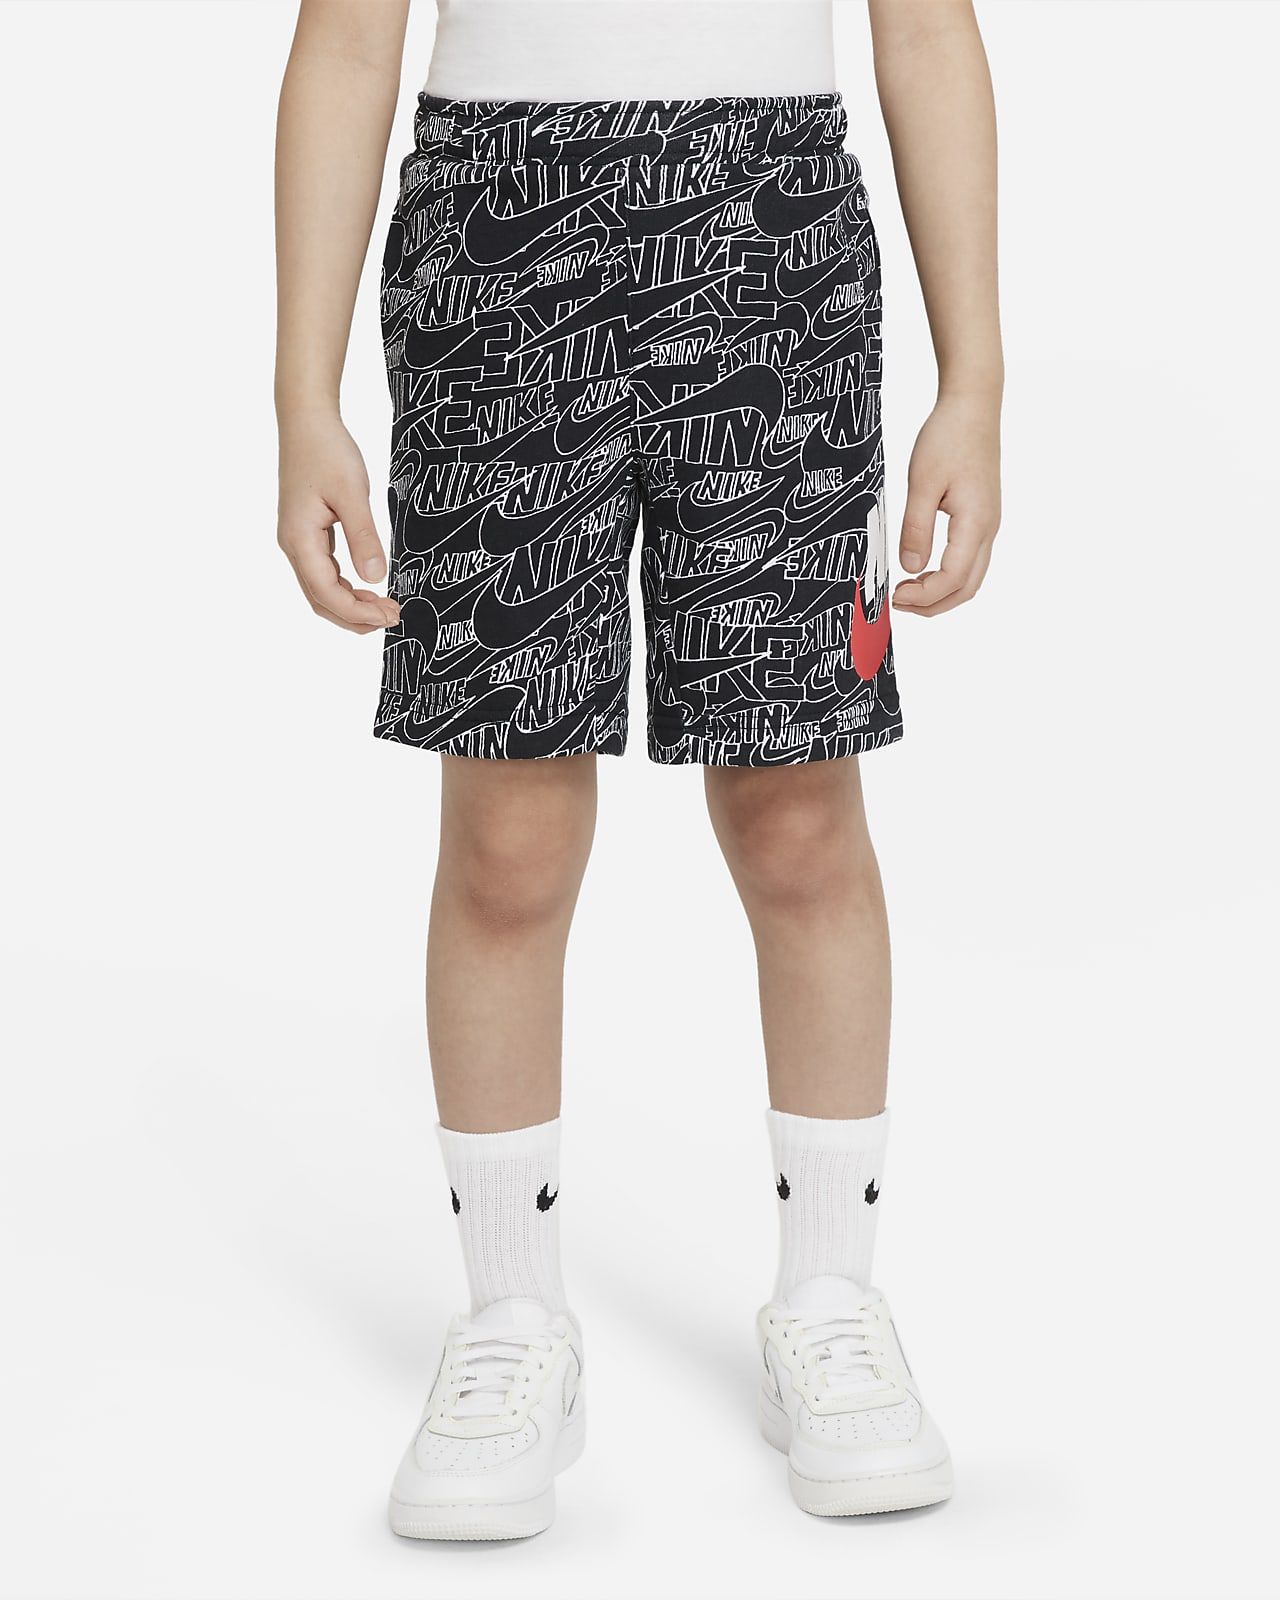 Nike Sportswear Little Kids' Shorts. Nike.com | Nike (US)